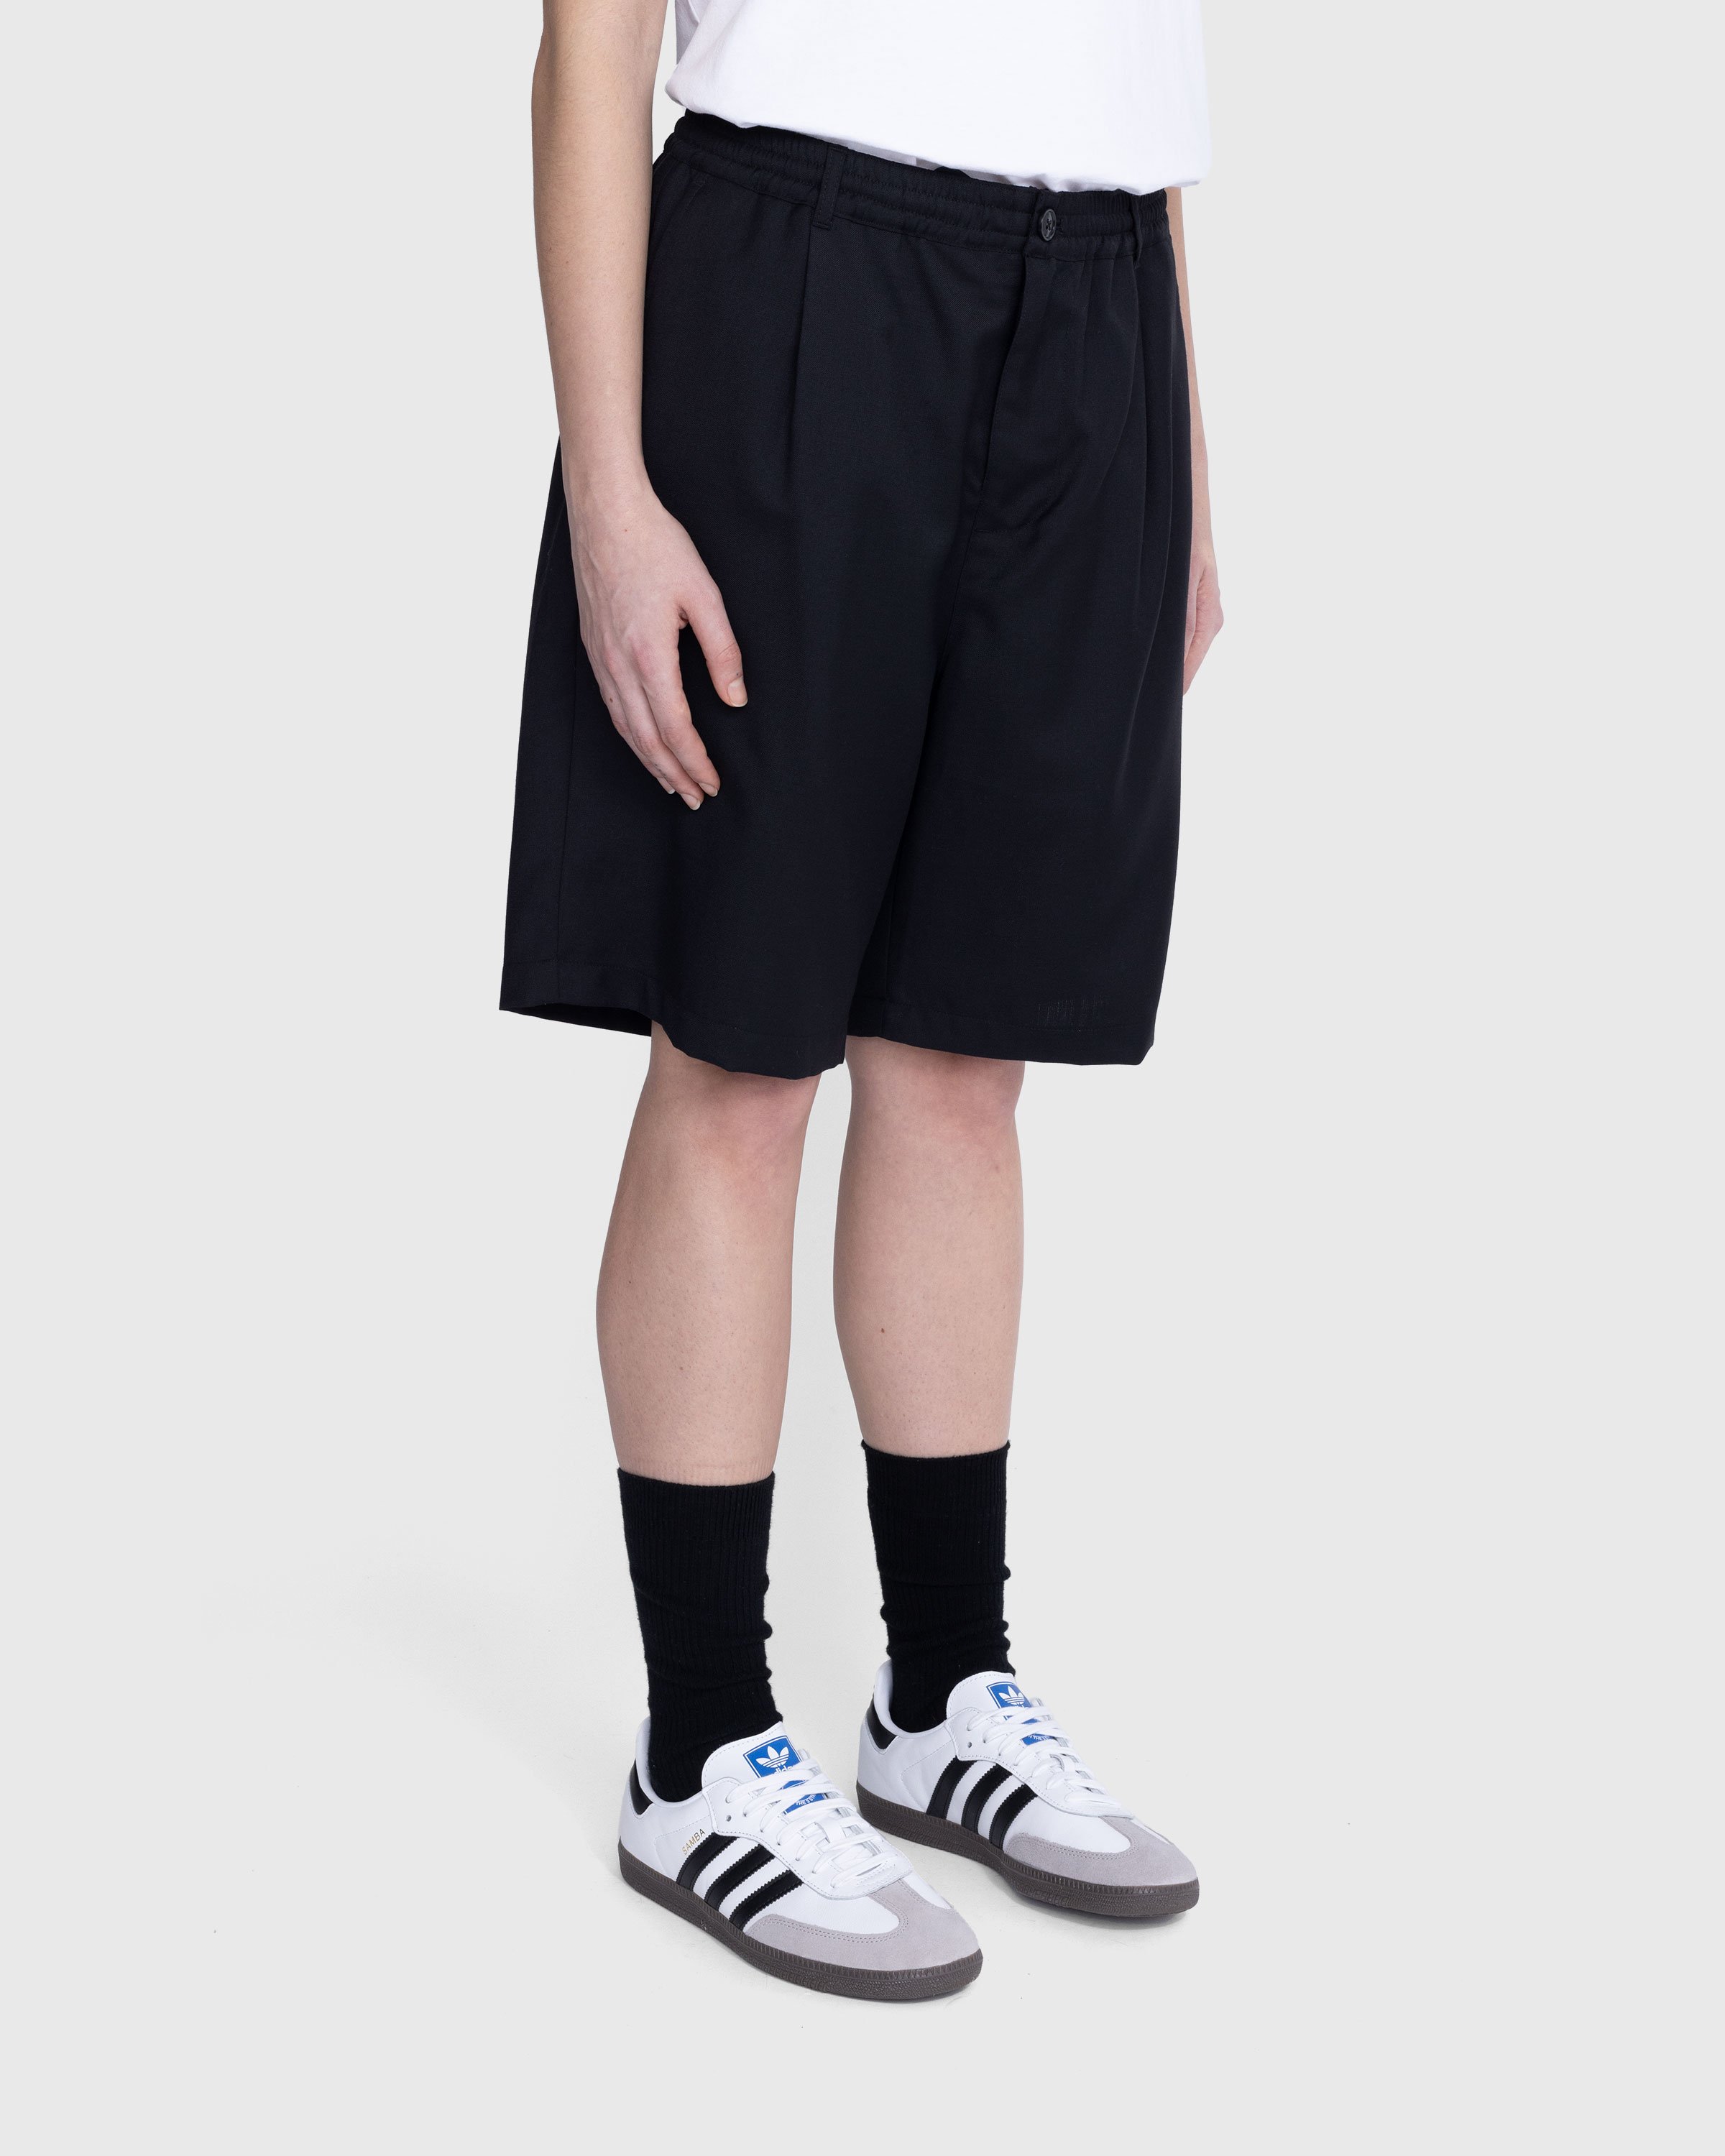 Highsnobiety - Tropical Wool Elastic Shorts Black - Clothing - Black - Image 9